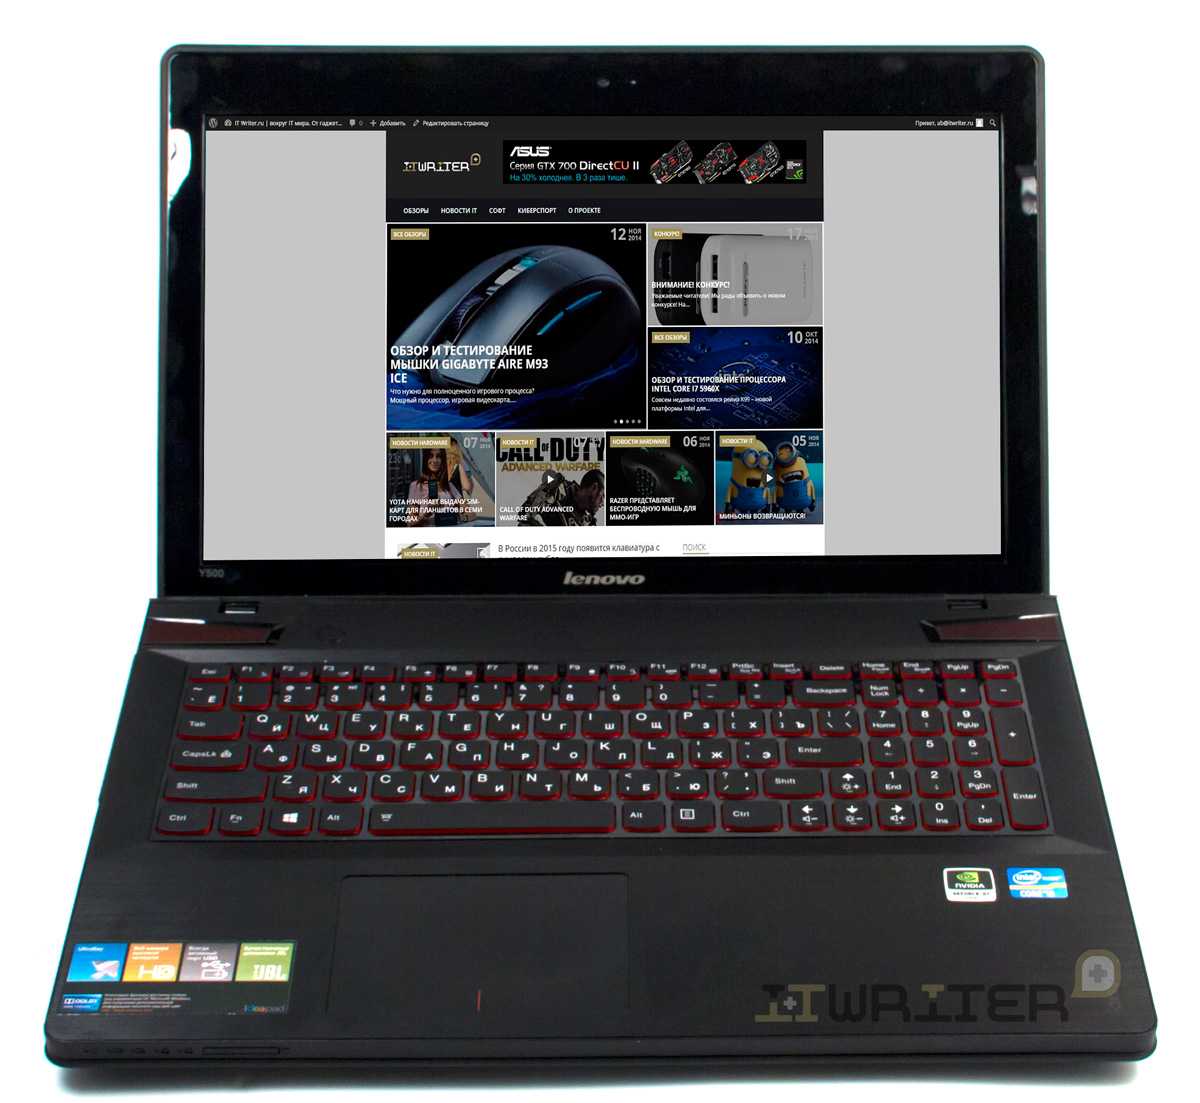 Ноутбук Lenovo IdeaPad P500 (B00DSPPJVY) - подробные характеристики обзоры видео фото Цены в интернет-магазинах где можно купить ноутбук Lenovo IdeaPad P500 (B00DSPPJVY)